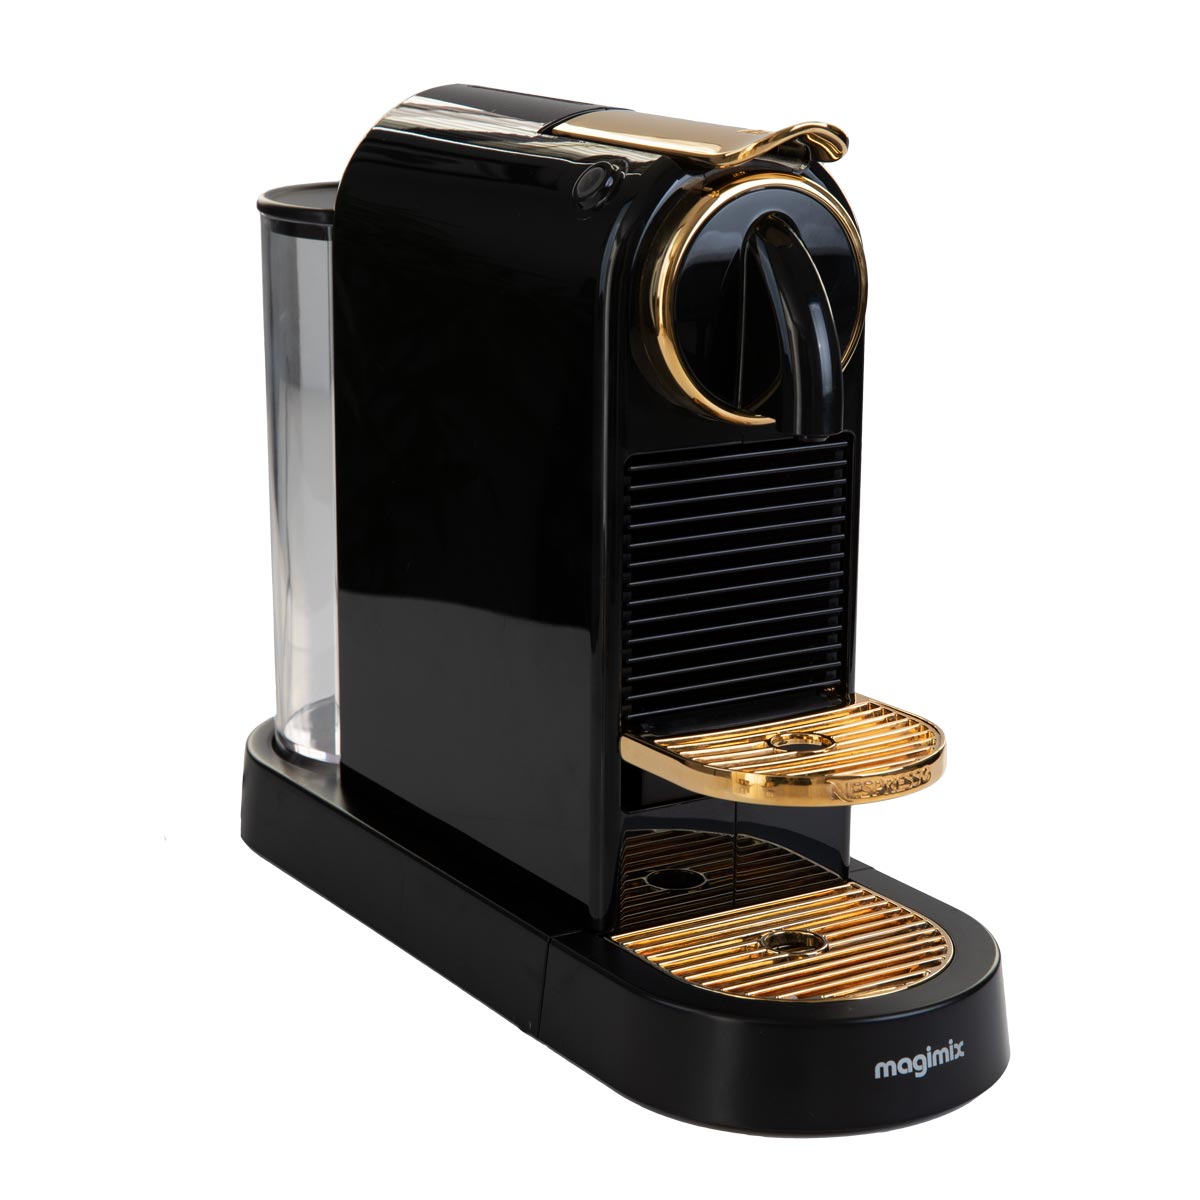 Praten Moeras vork Luxury Nespresso Coffee Machine - Elite Luxury Gold Plating